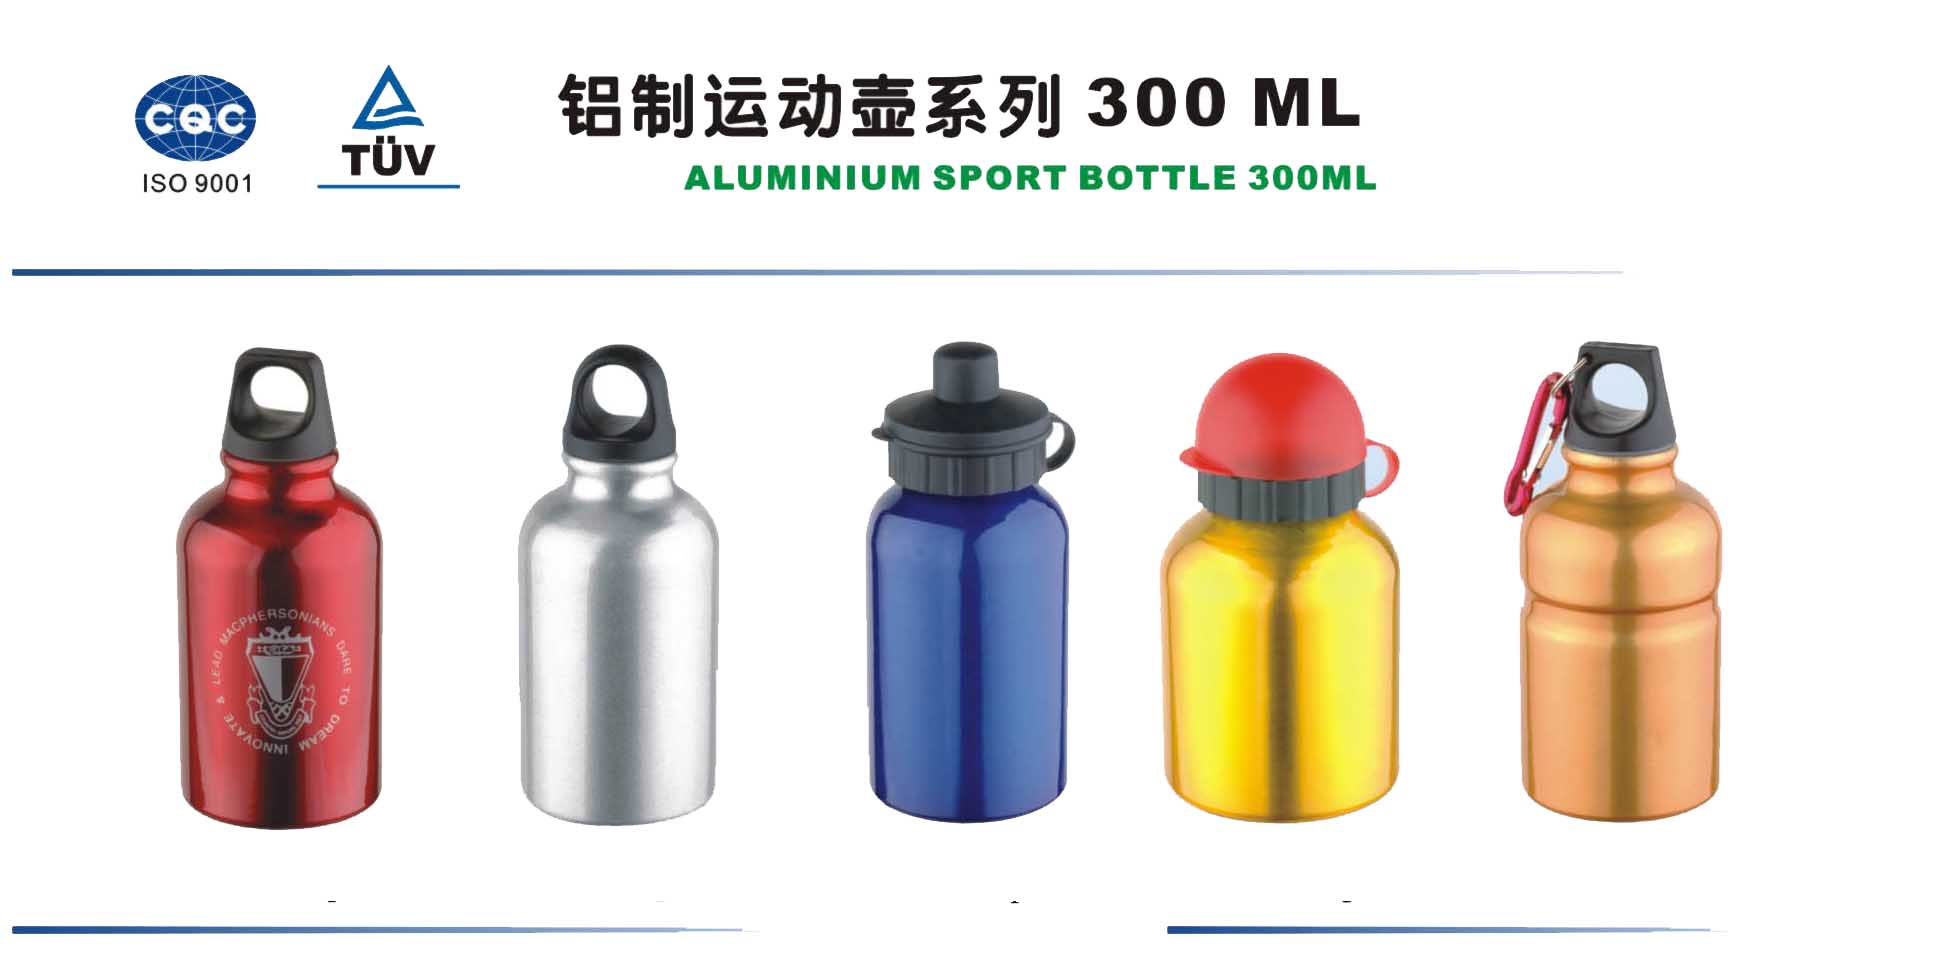  Aluminum Sport Bottle 300ml ( Aluminum Sport Bottle 300ml)